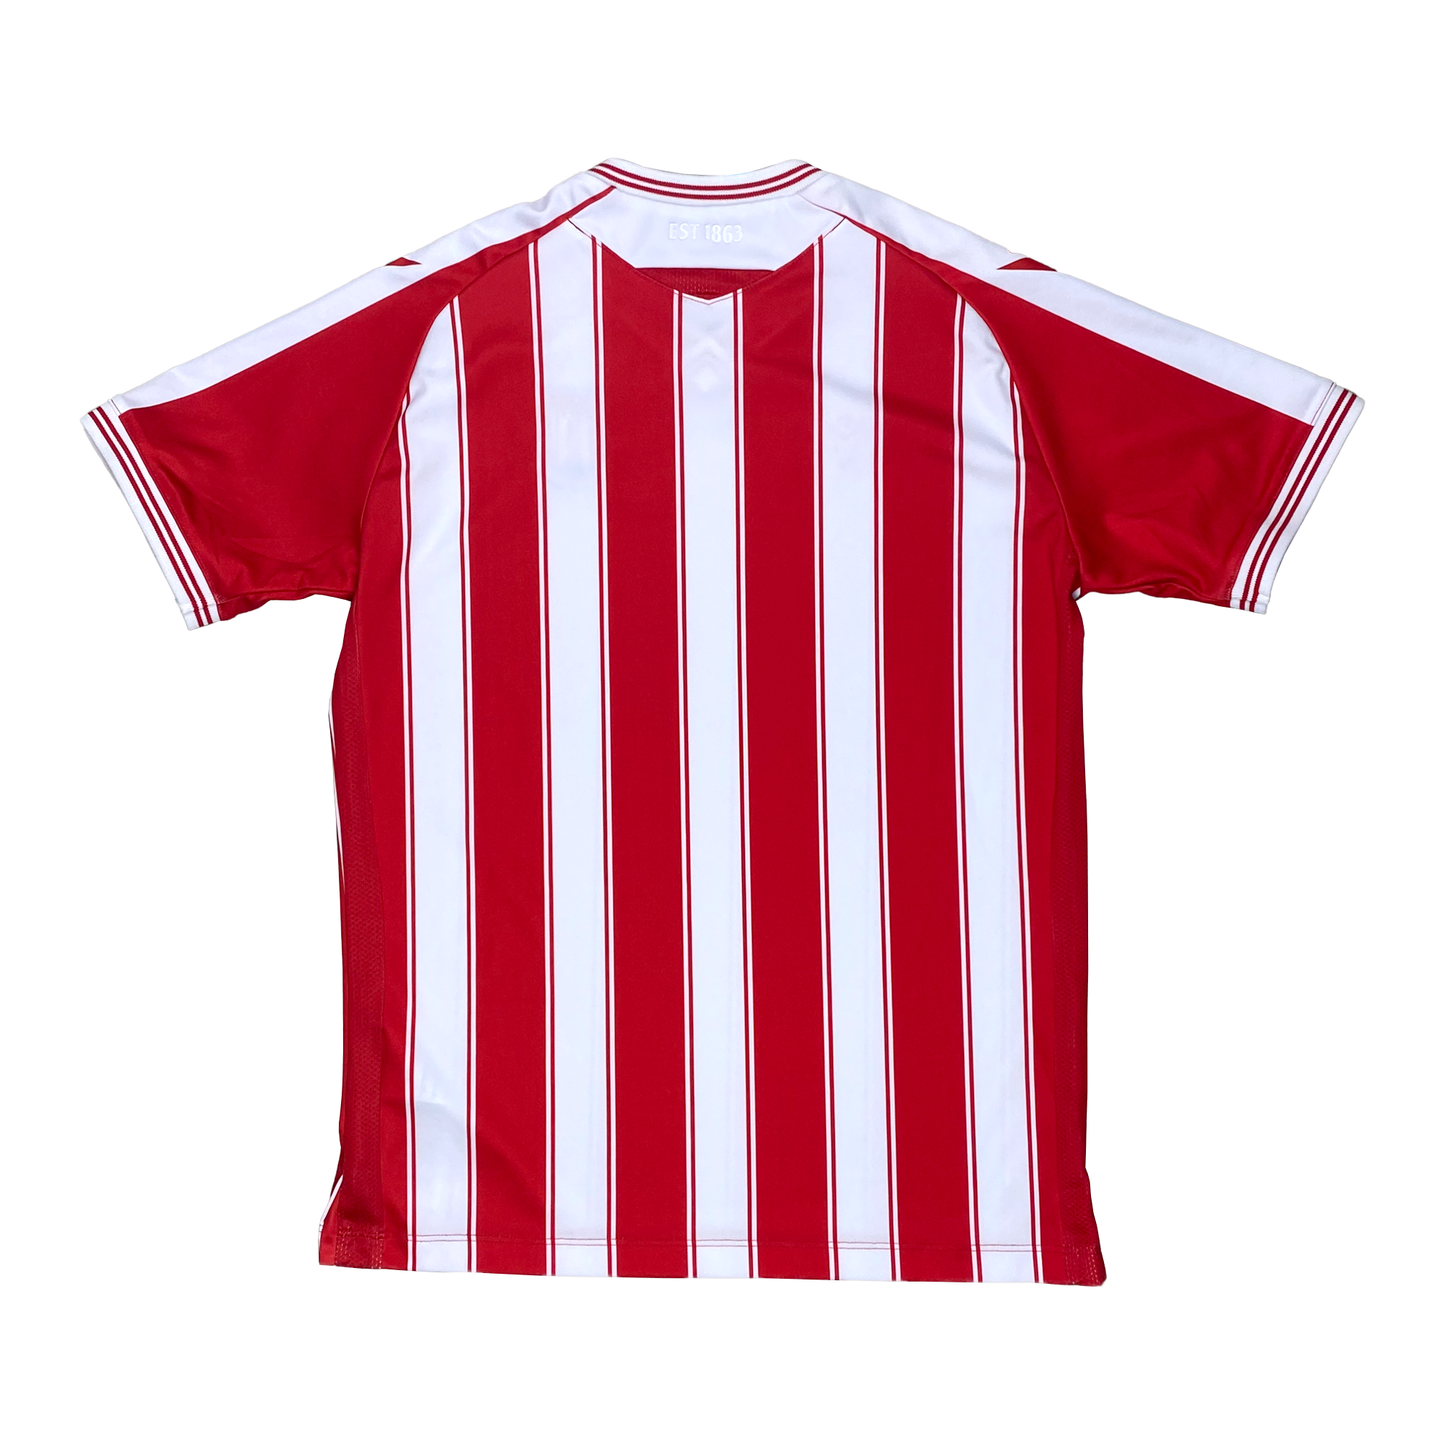 Stoke City Home Shirt (2020-21) - 13/14 Years